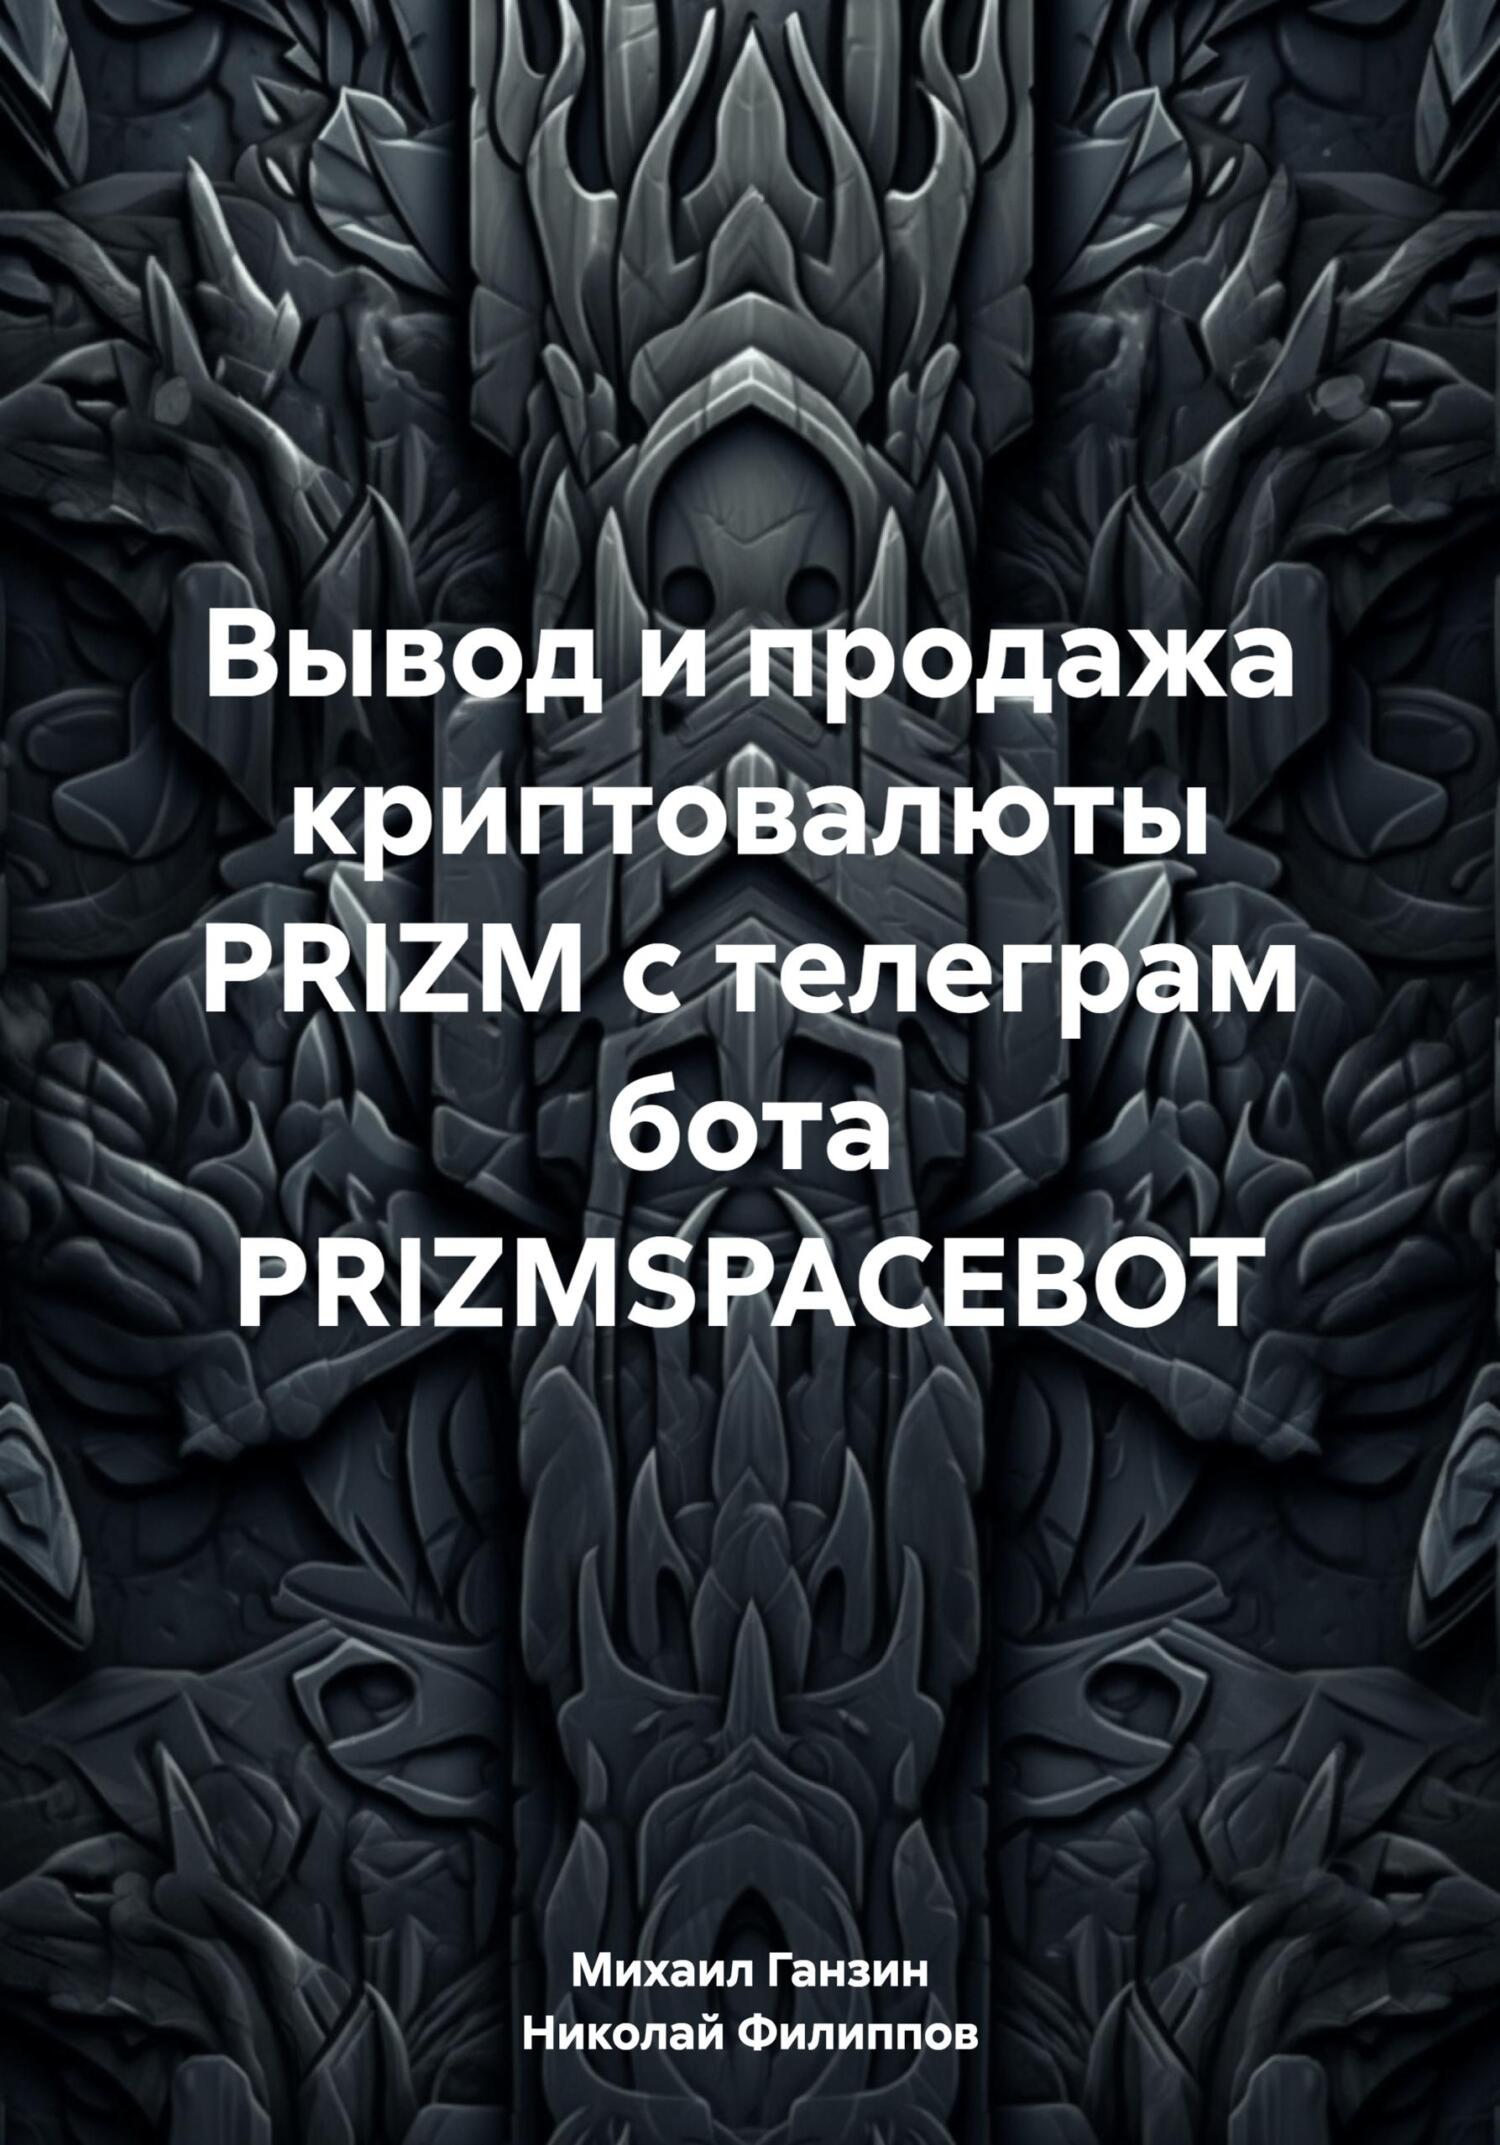 обложка книги Вывод и продажа криптовалюты PRIZM с телеграм бота PRIZMSPACEBOT